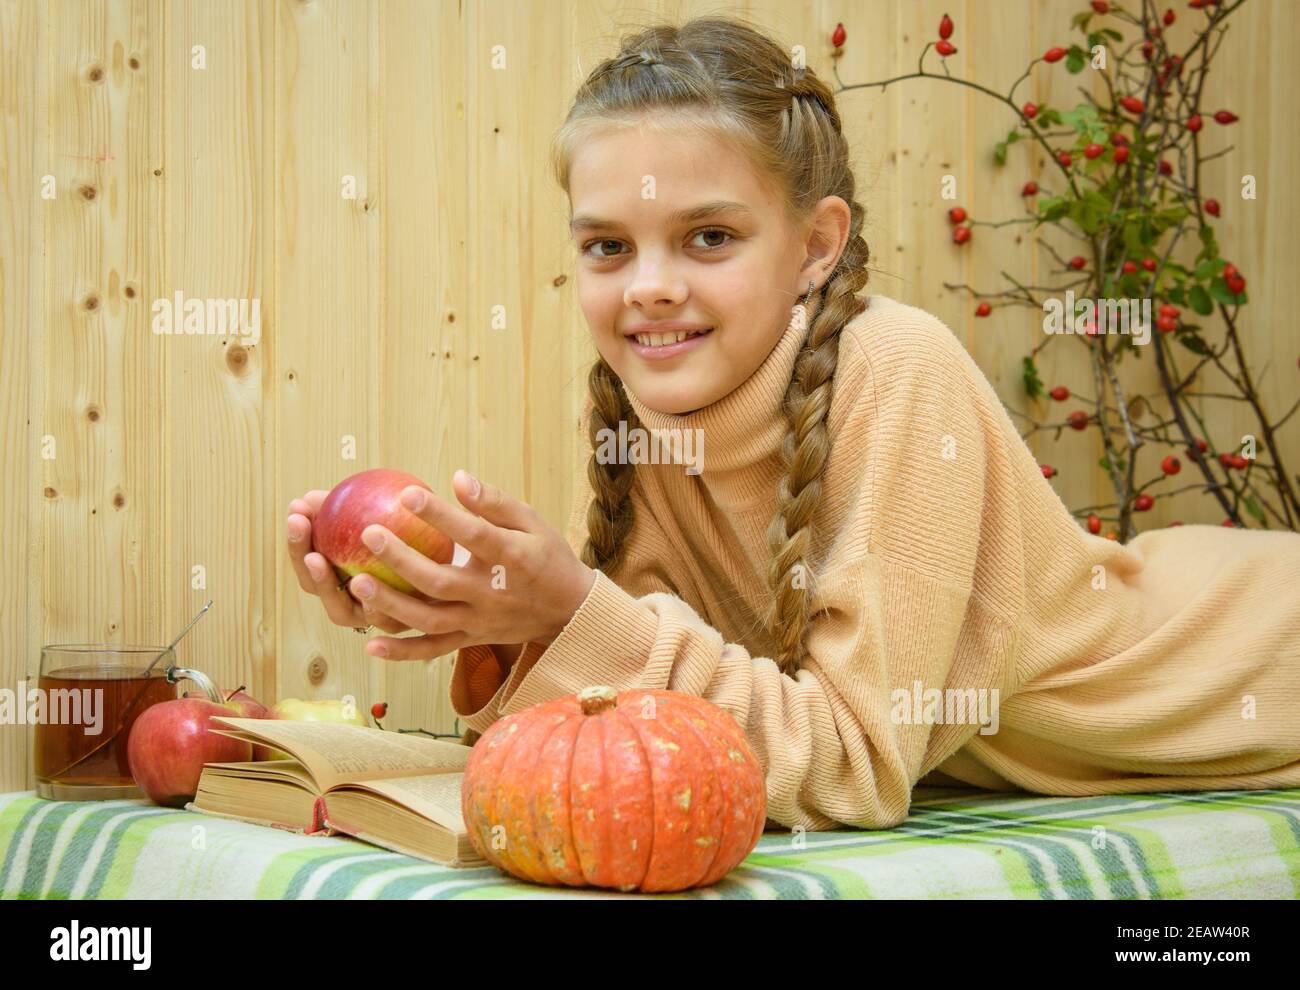 Ein Mädchen, das sich hinlegt, liest ein Buch, hält einen Apfel in der Hand und schaut glücklich in den Rahmen Stockfoto